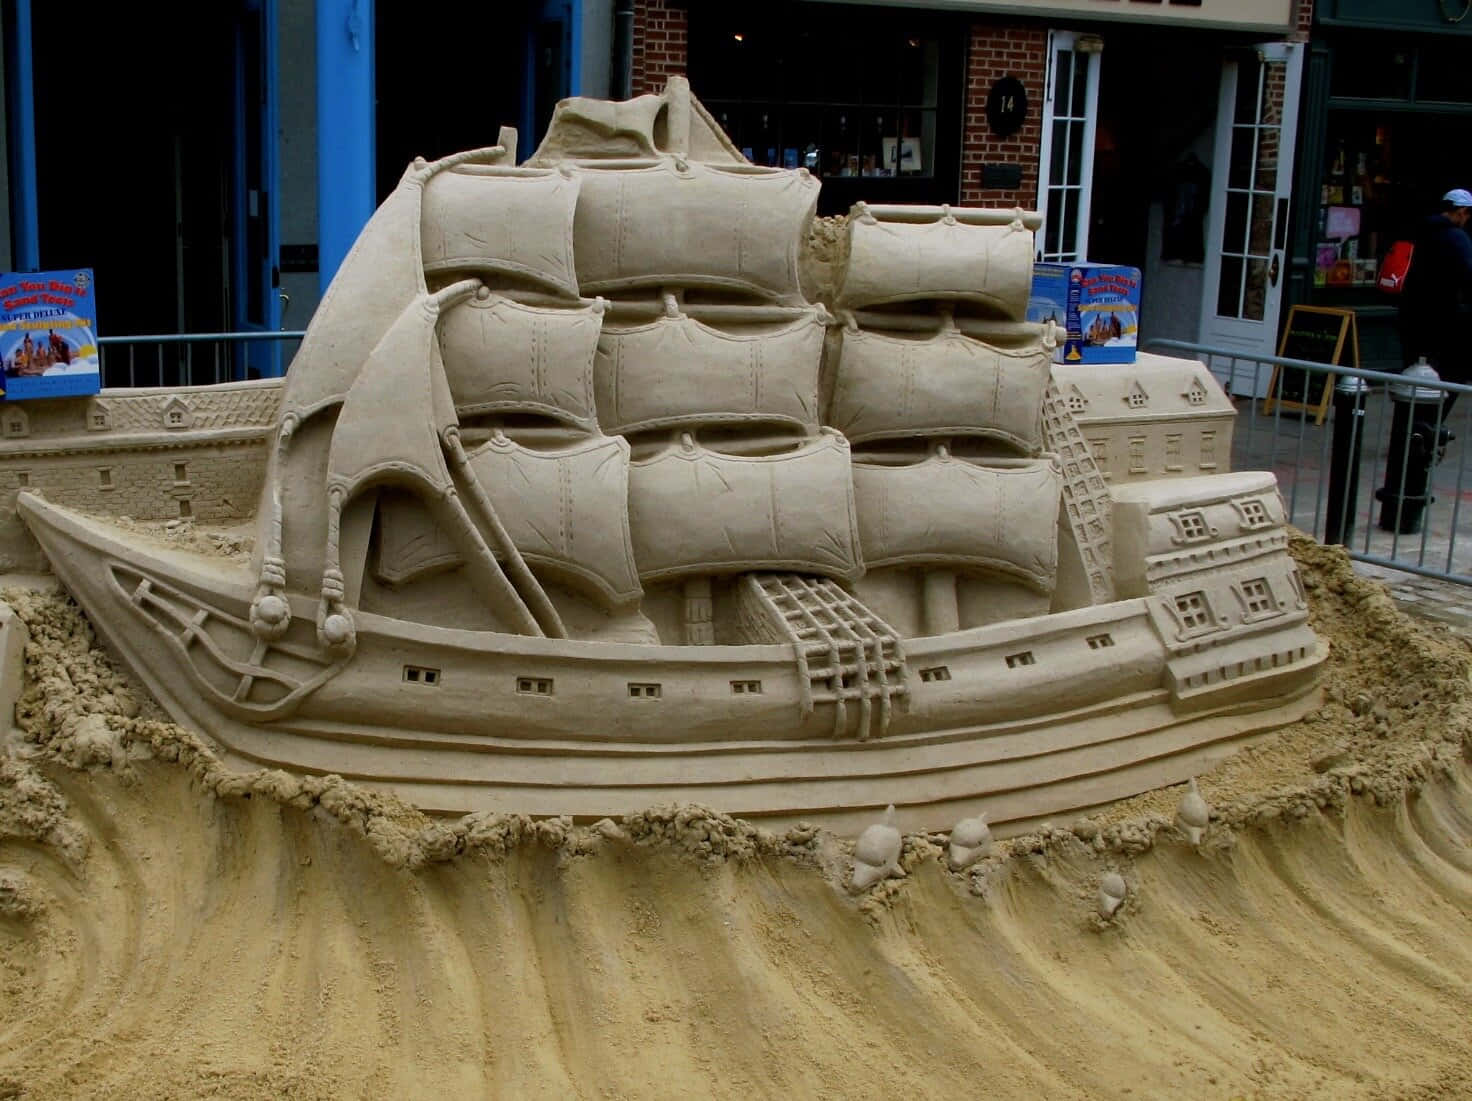 A Sand Sculpture Of A Ship